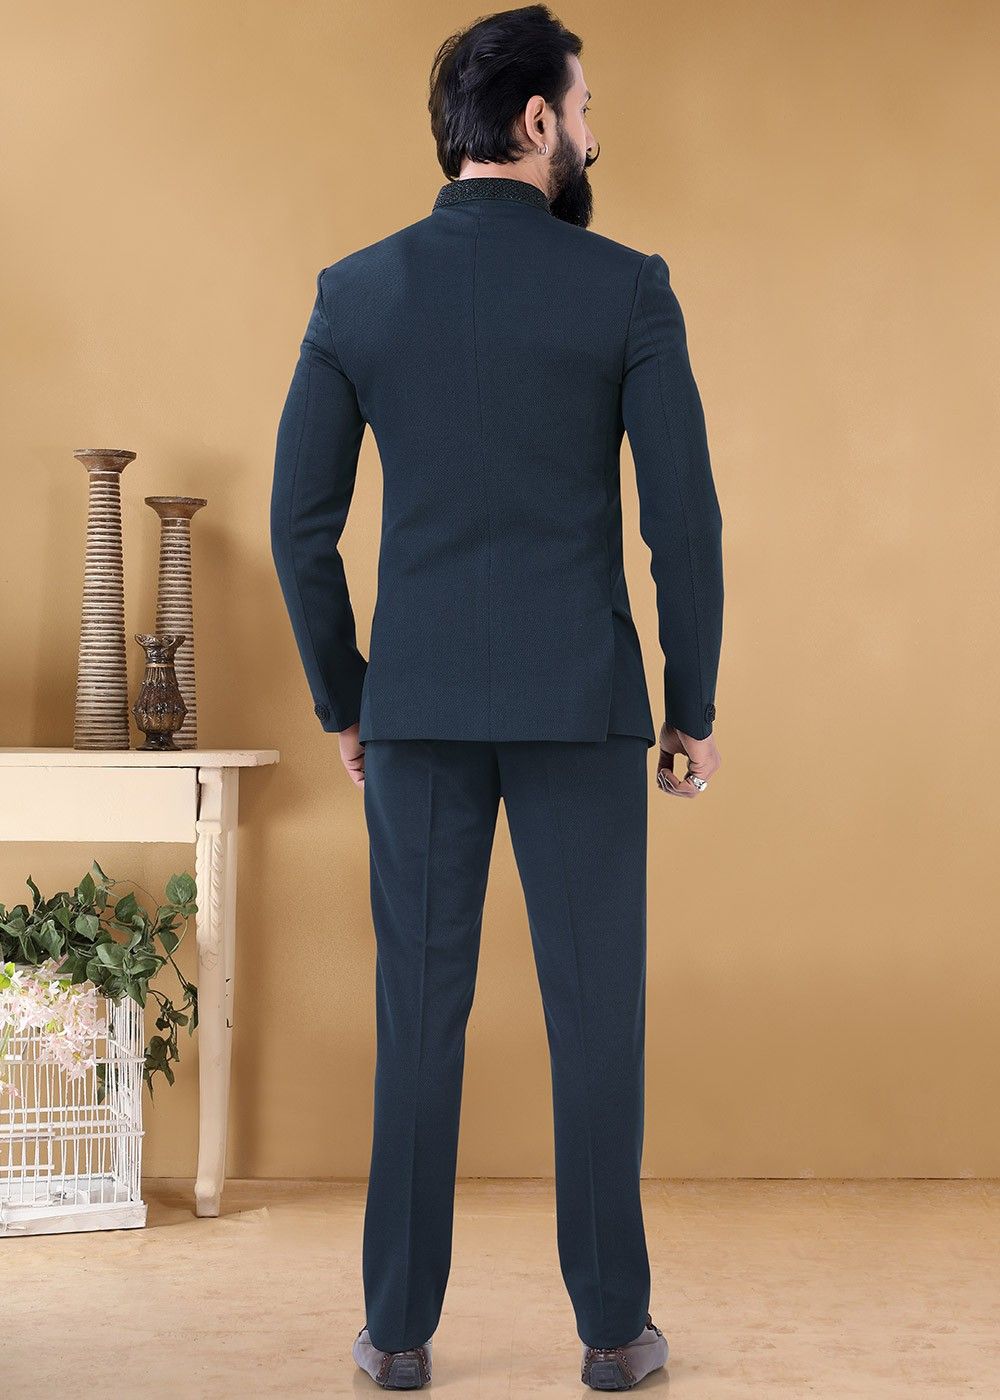 Indian Turquoise Blue Jodhpuri Suit Self Designer Wedding - Etsy